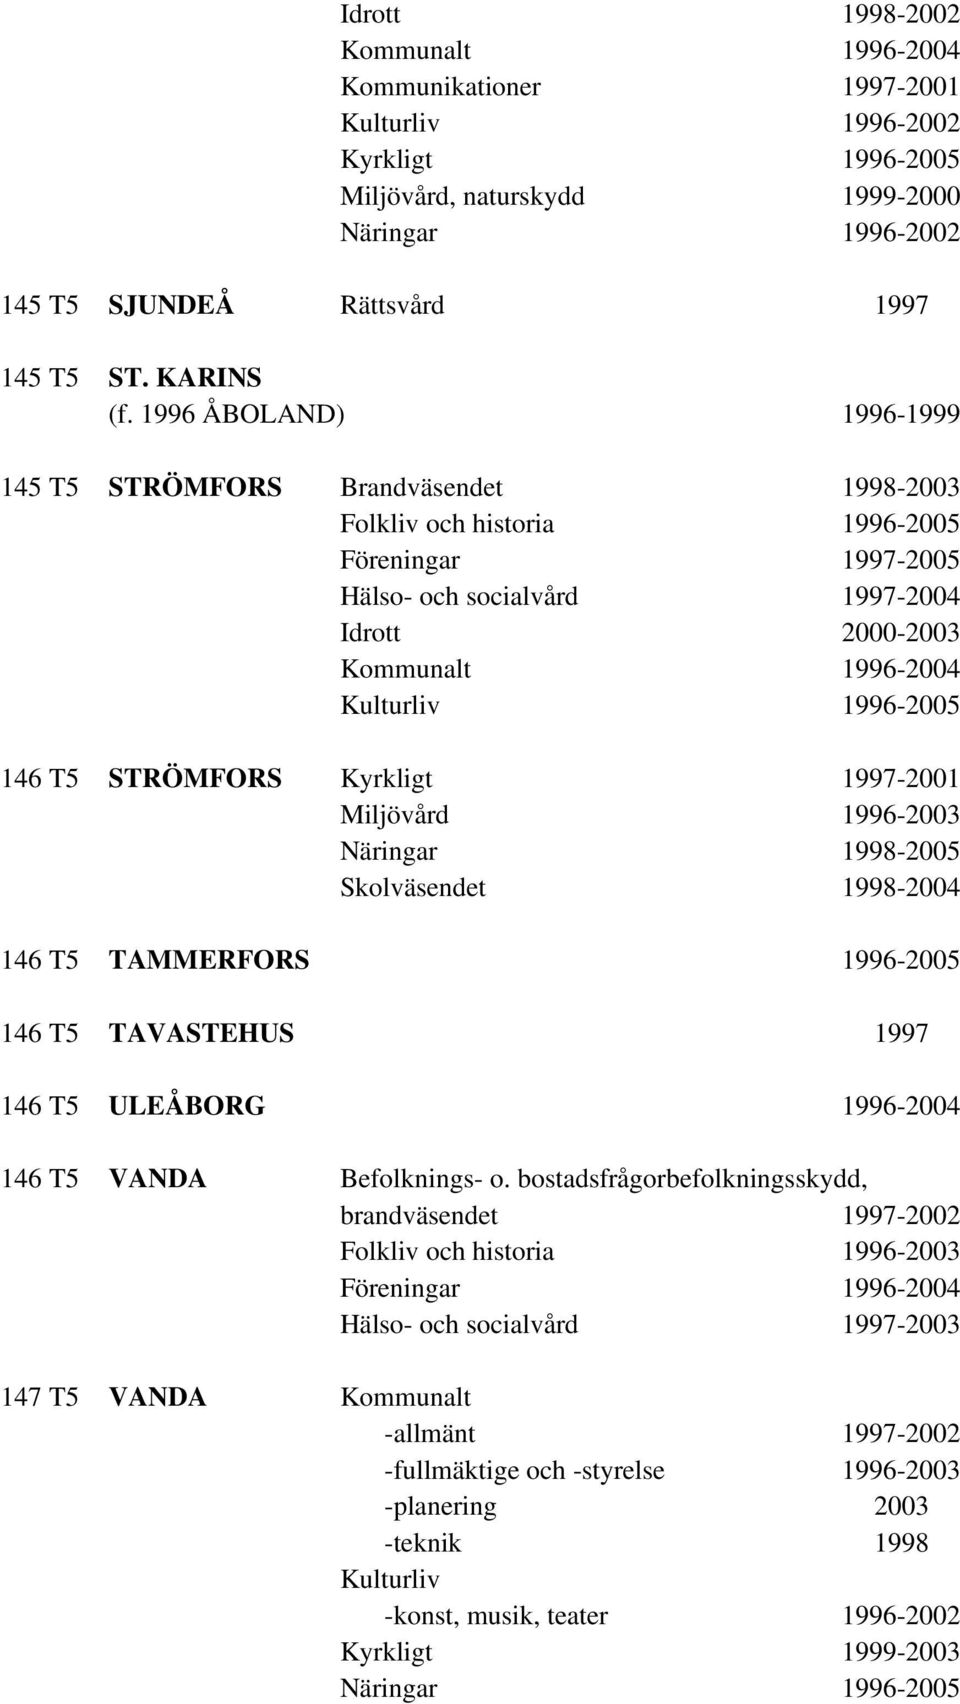 T5 STRÖMFORS Kyrkligt 1997-2001 Miljövård 1996-2003 1998-2005 1998-2004 146 T5 TAMMERFORS 1996-2005 146 T5 TAVASTEHUS 1997 146 T5 ULEÅBORG 1996-2004 146 T5 VANDA Befolknings- o.